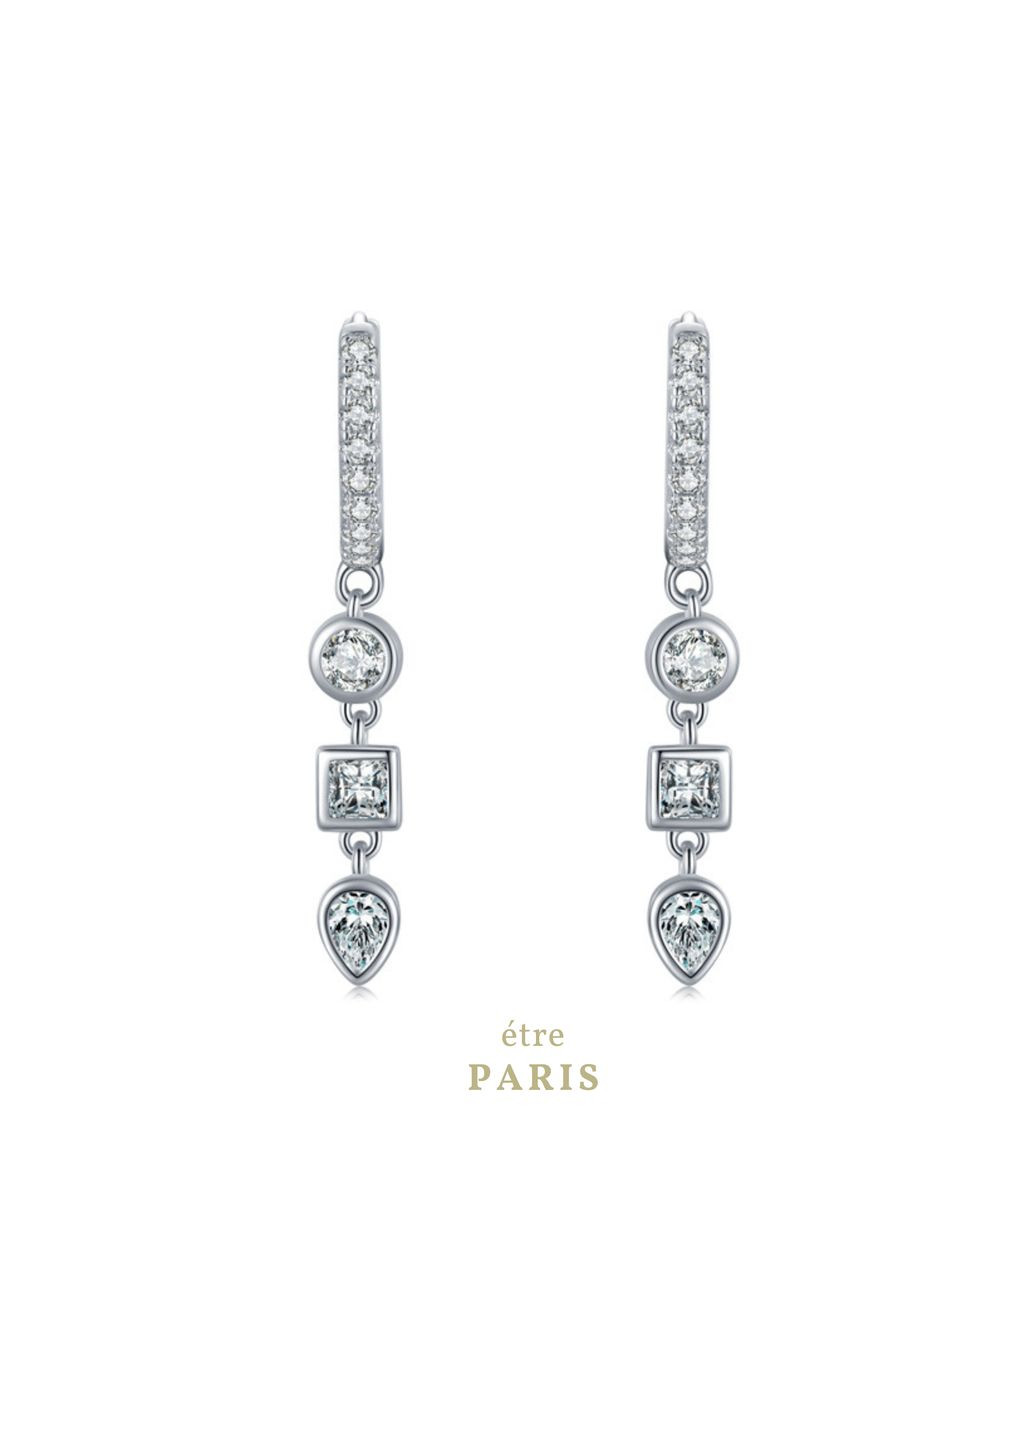 Серебряные серьги с бриллиантами, серьги с вышивкой, длинные серебряные серьги, подарок девушке CC2. Etre (292401659)